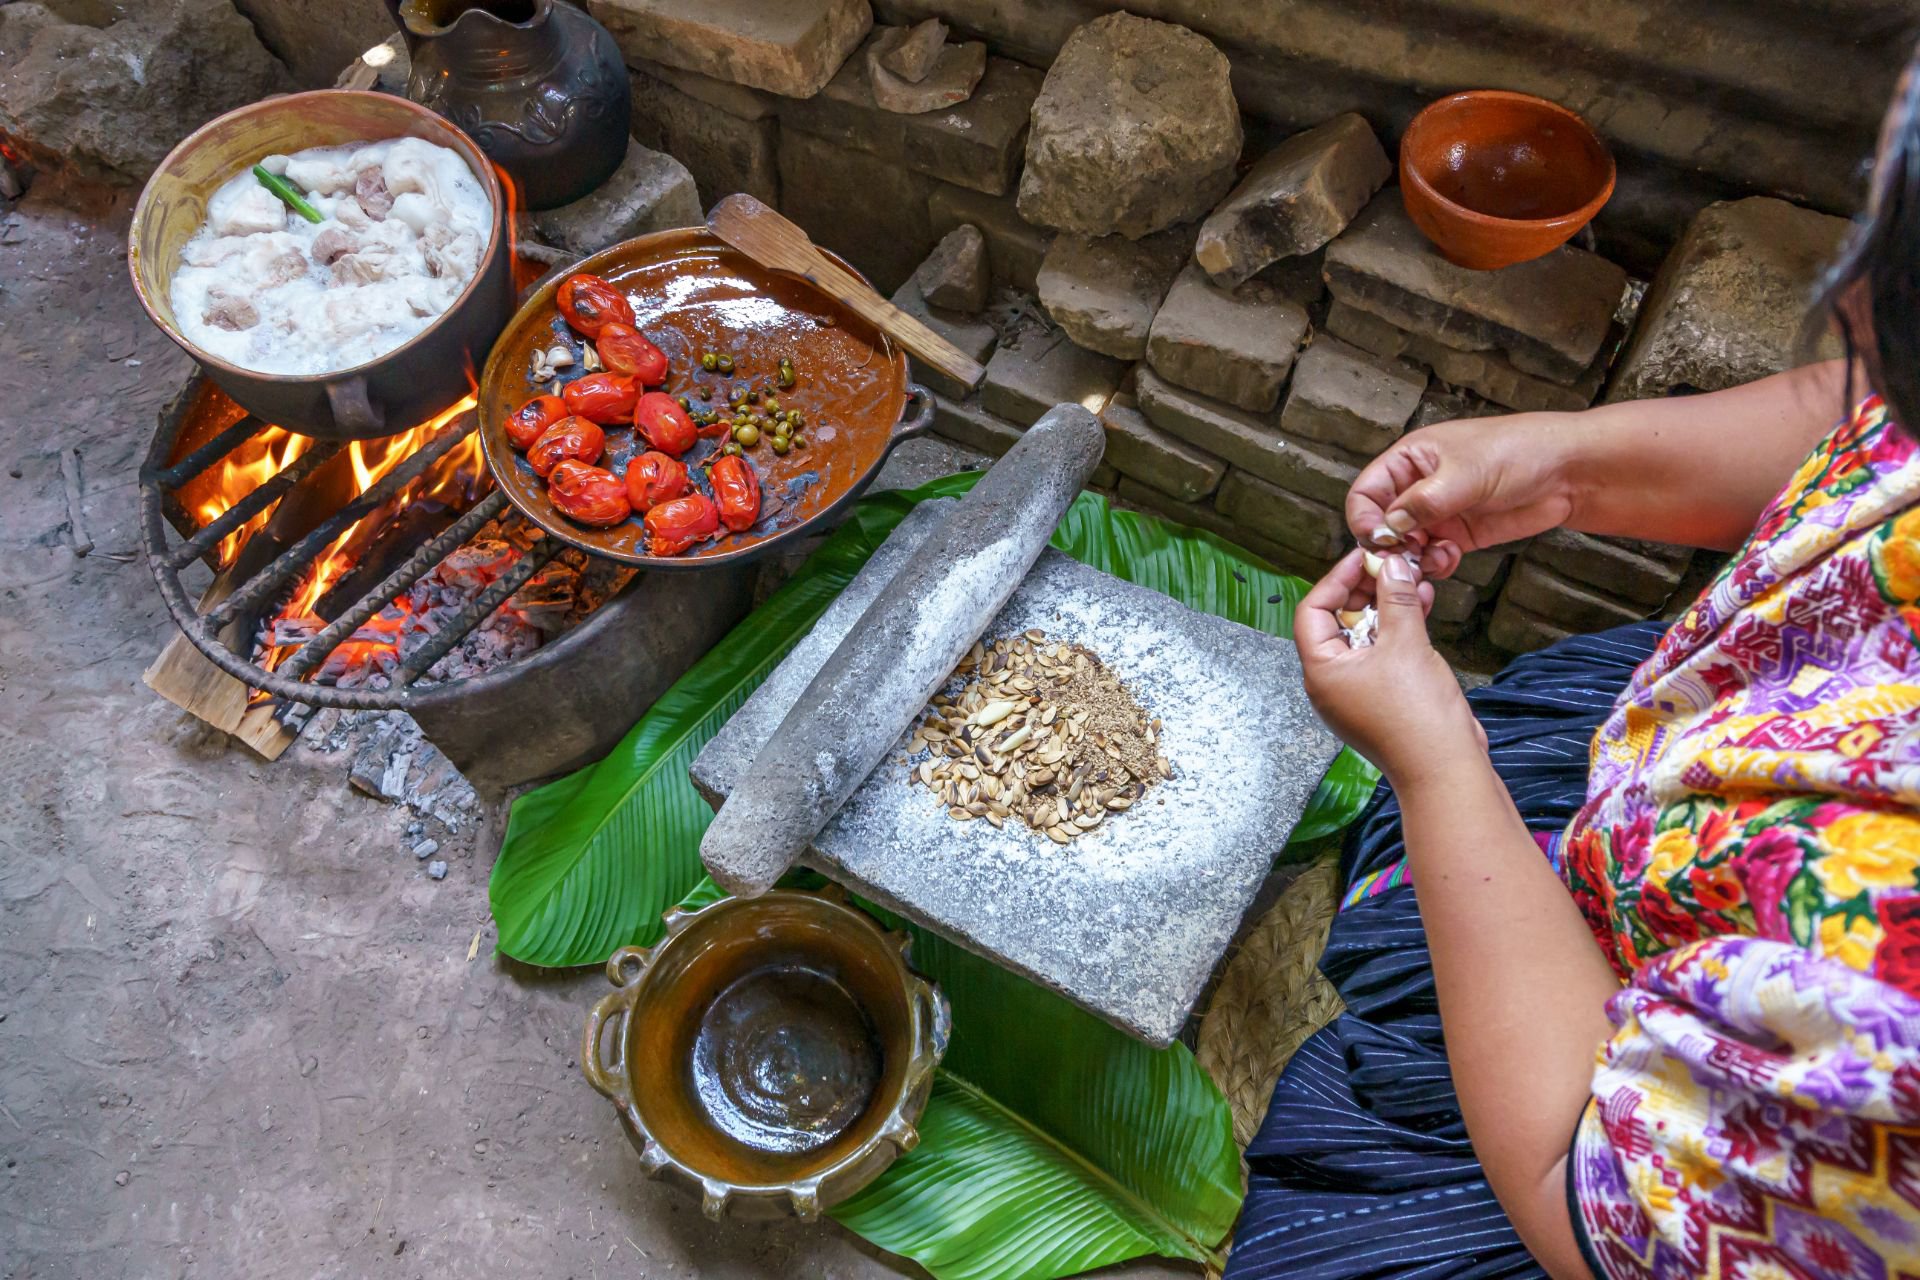 Xela-Quetzaltenango-Cocina-Tradicional-Guatemala-Choka-Receta-recado-fuego-pepita-tomate-piedra-de-moler-6.jpg